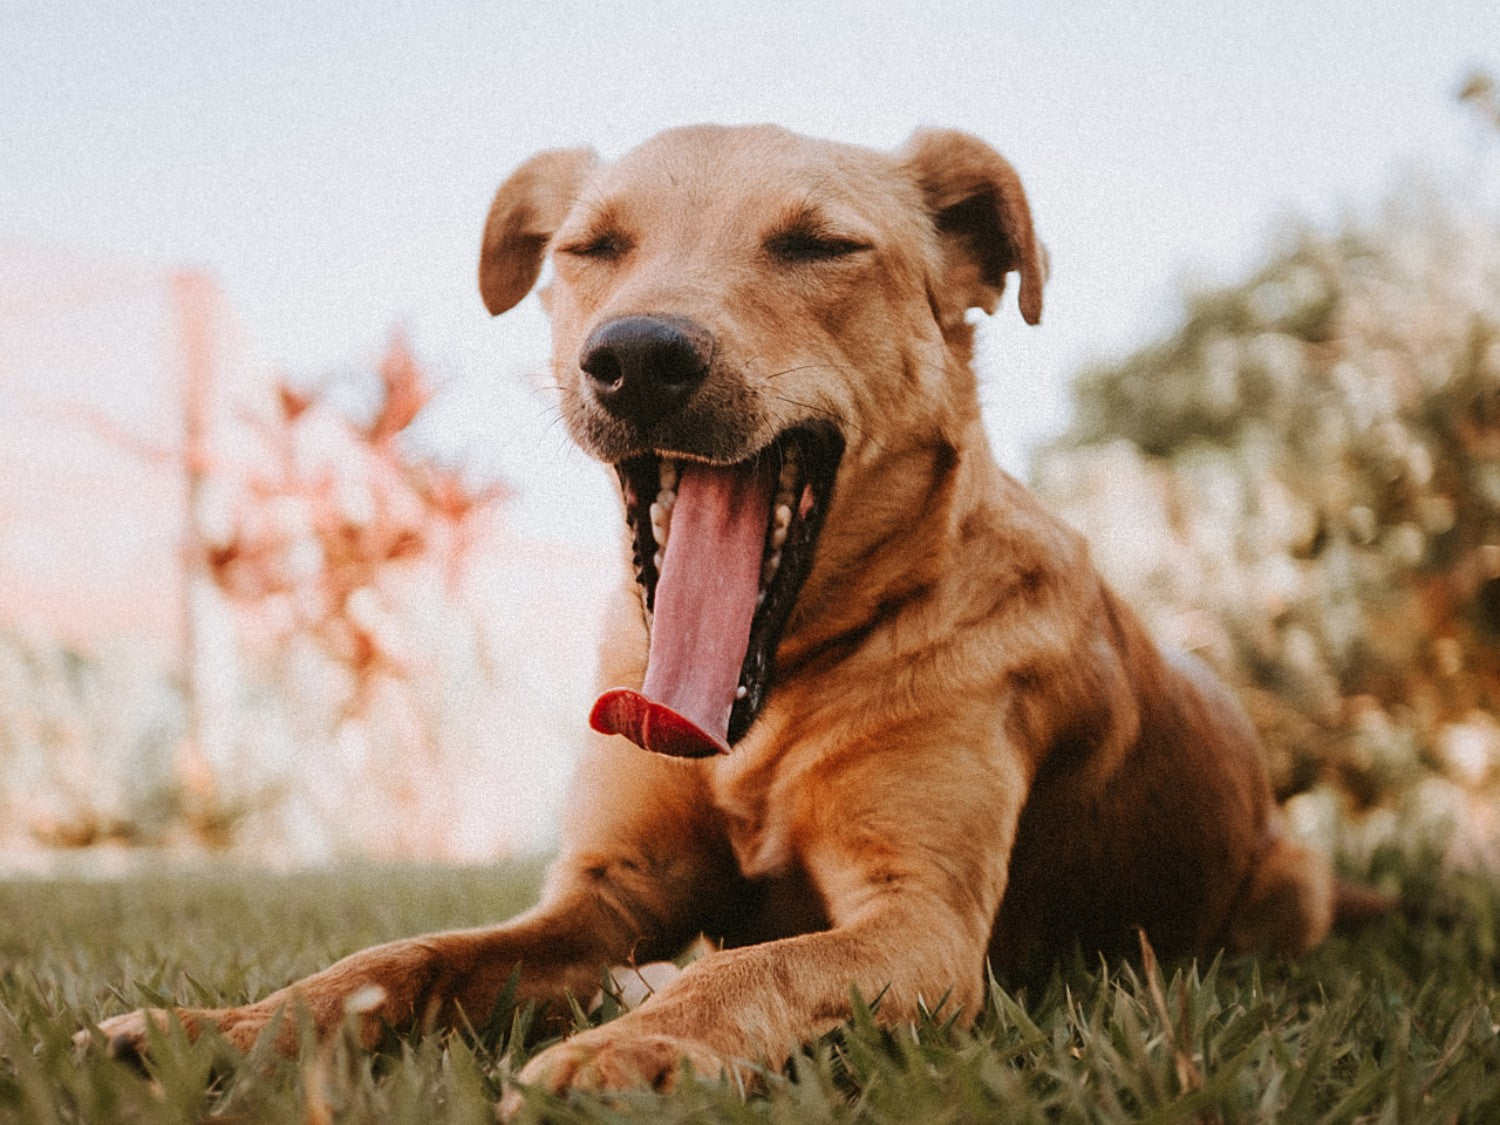 Dog Yawning Outdoors After Walk. Photo Credit: Eduardo Gorghetto, Unsplash